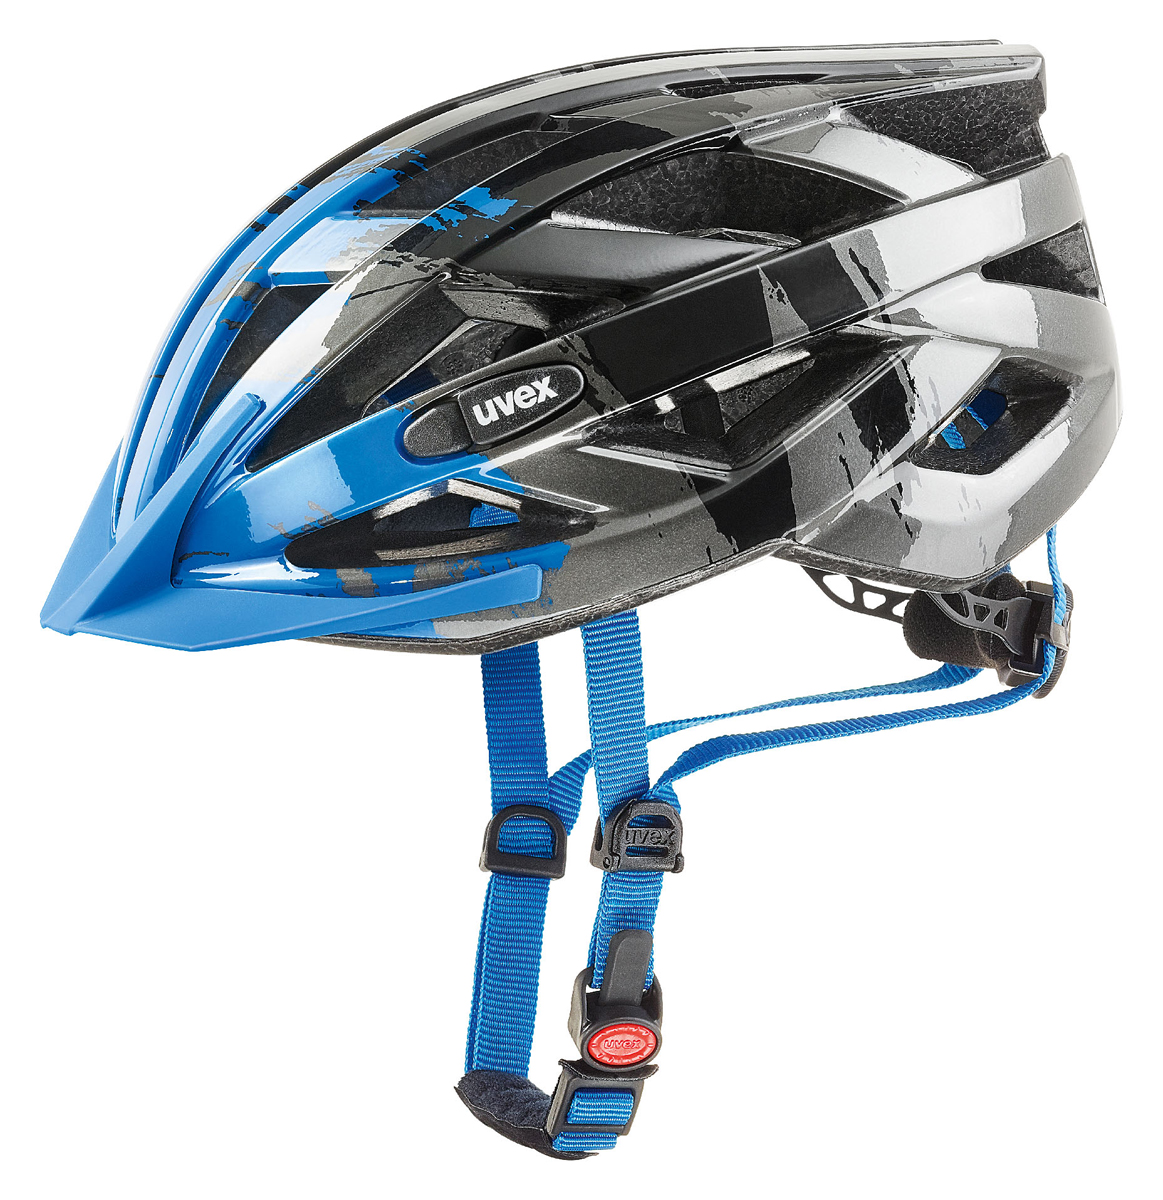 Uvex IVO C Fahrrad Helm grau/blau 2018 von Top Marken